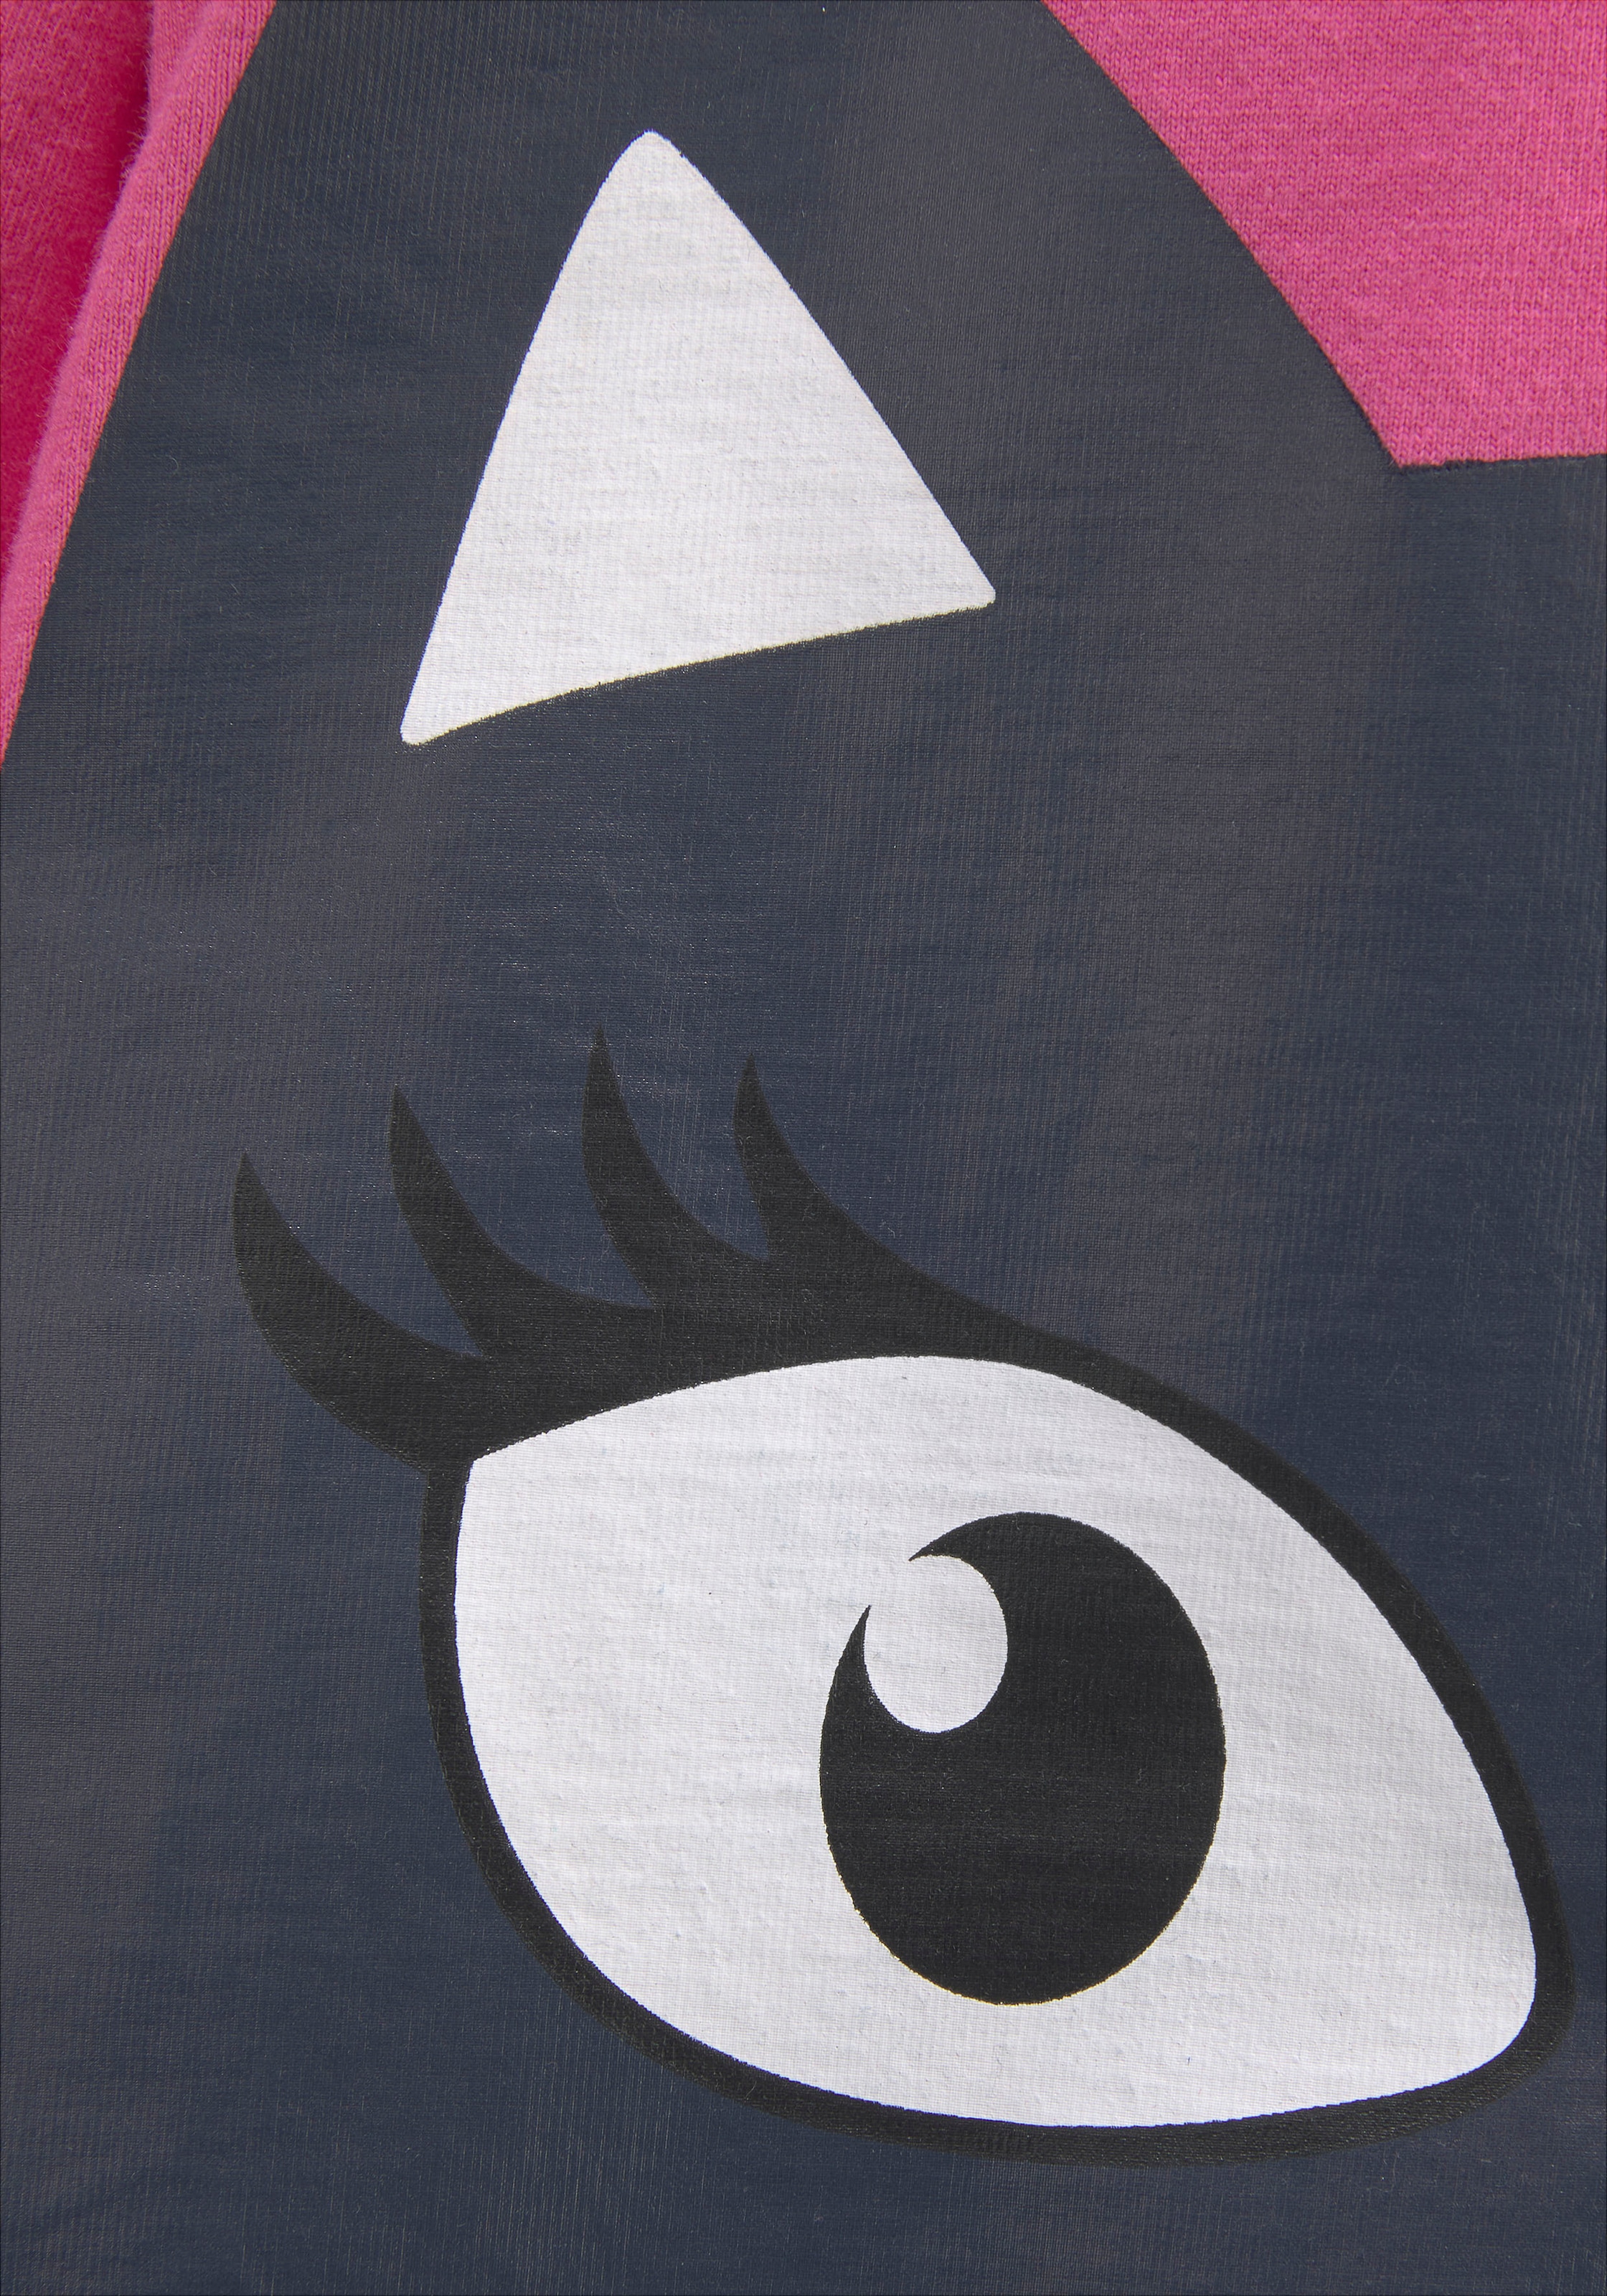 KIDSWORLD Longshirt »für kleine Mädchen«, (2 tlg., 2er-Pack), mit grossem Print und schönen Streifen